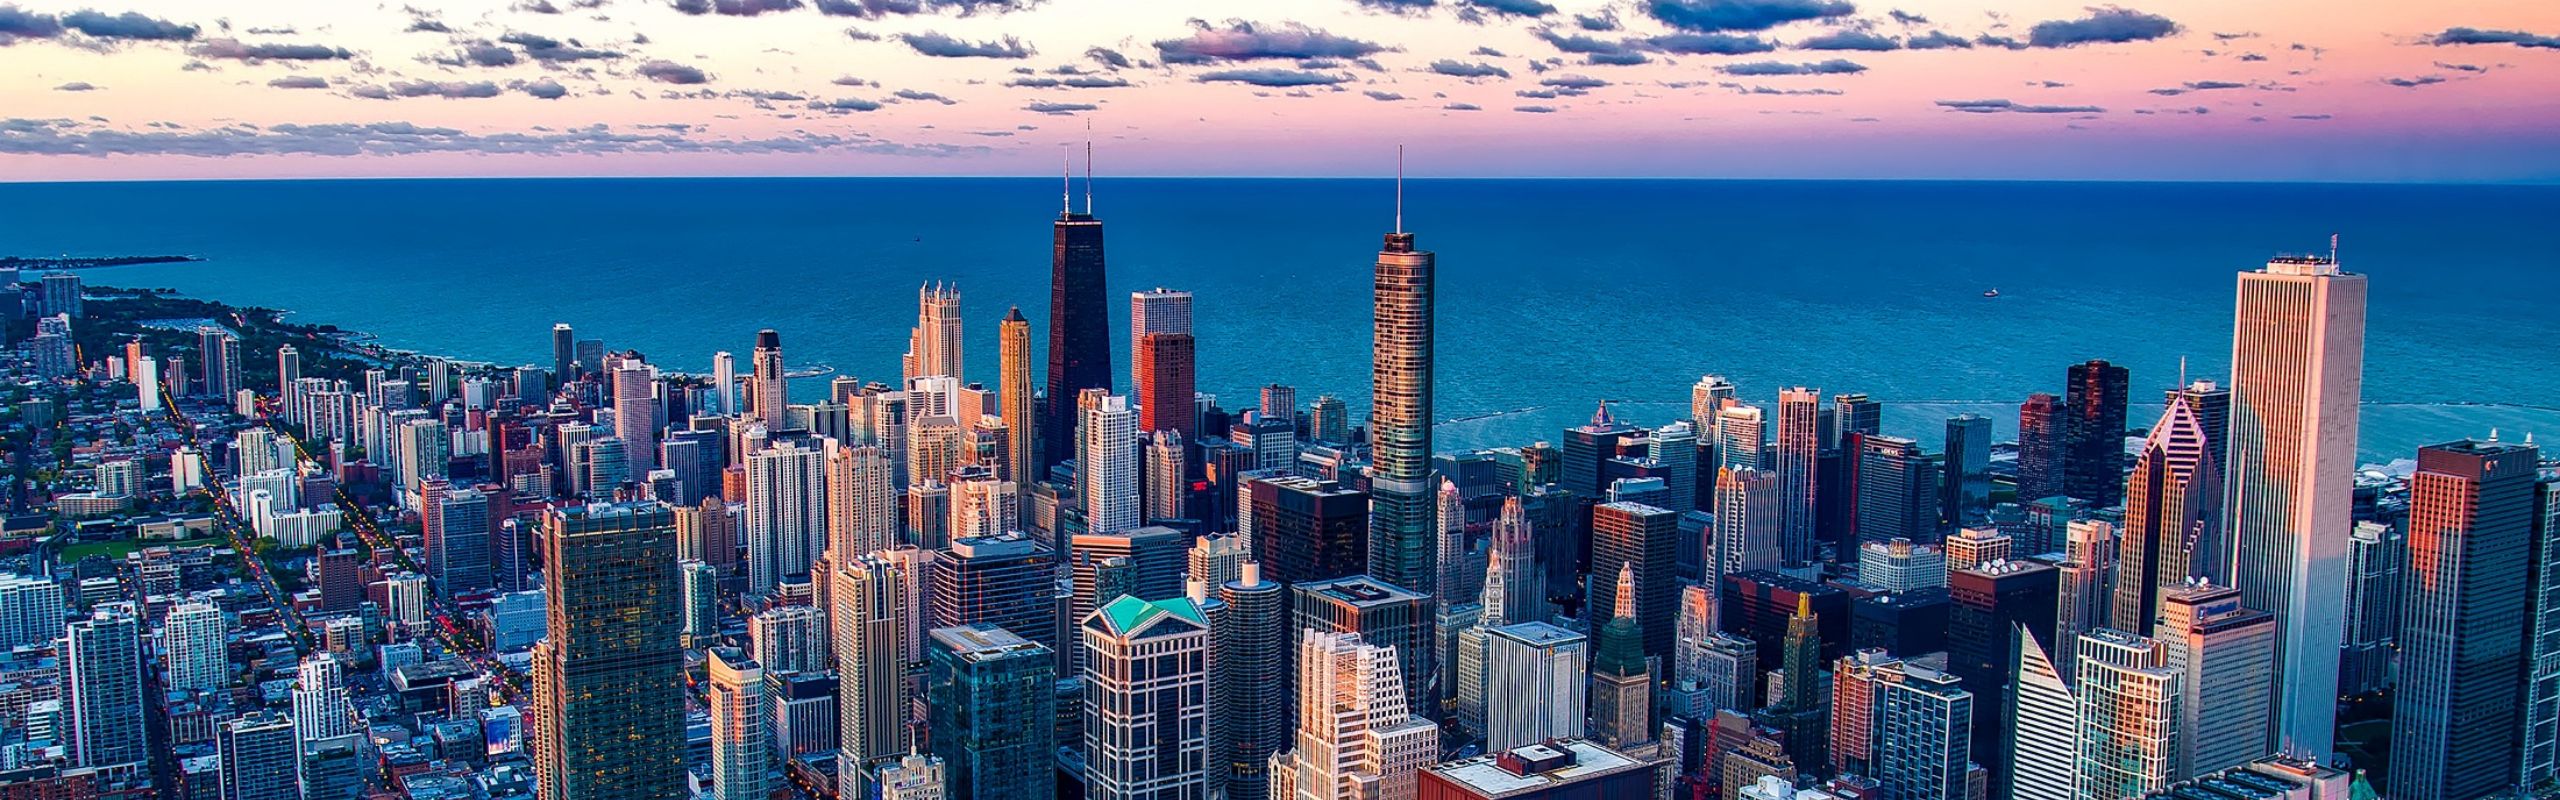 chicago skyline overlooking lake